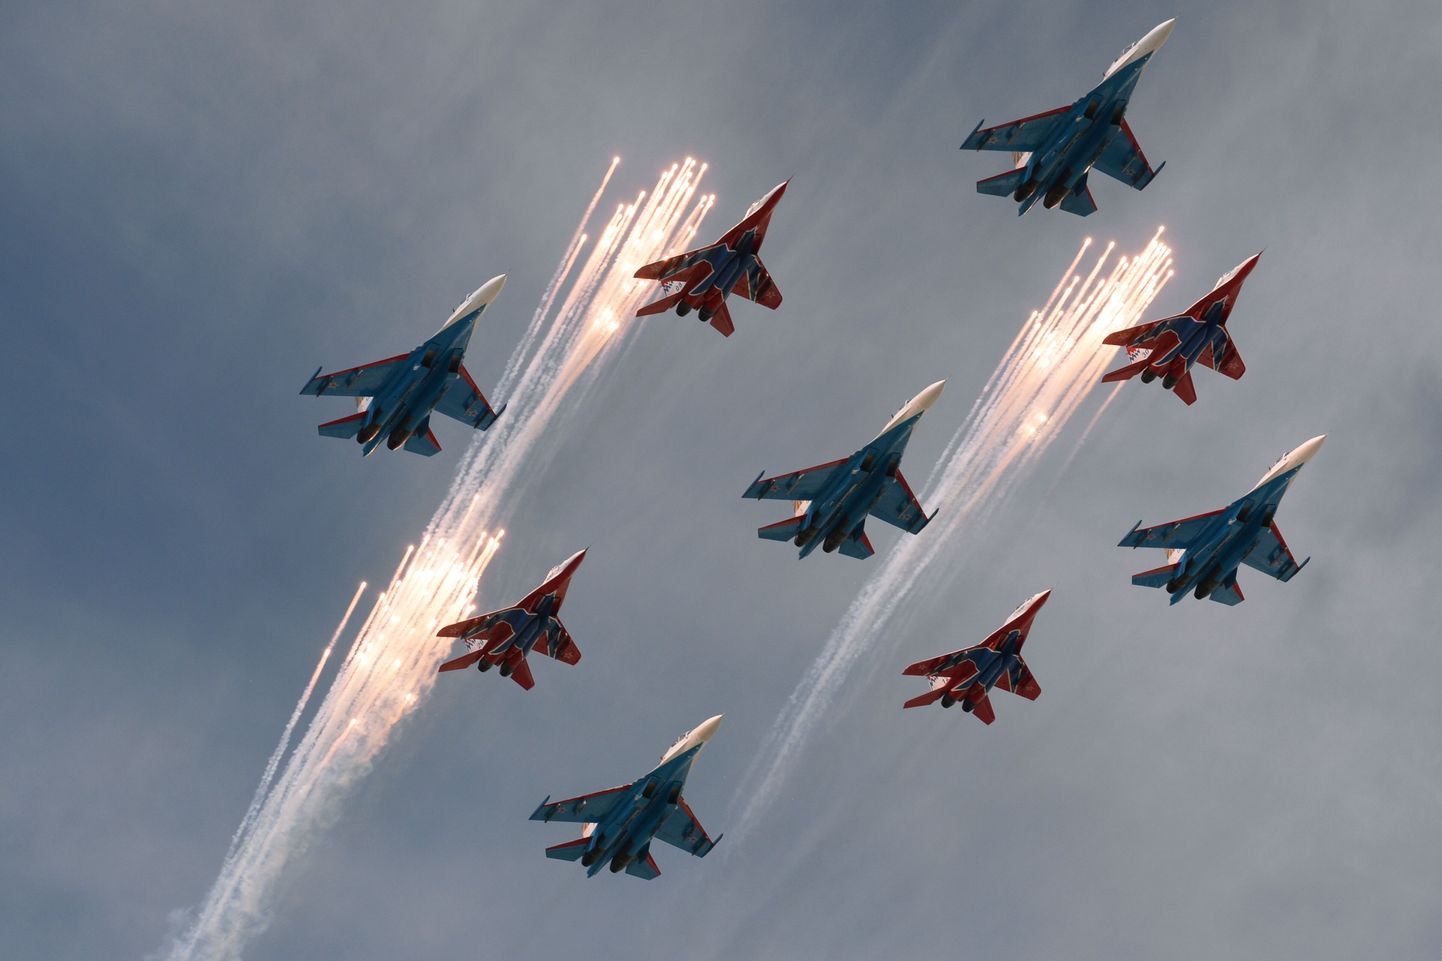 Vene lennukid võidupühal Punase väljaku kohal ülelendu sooritamas